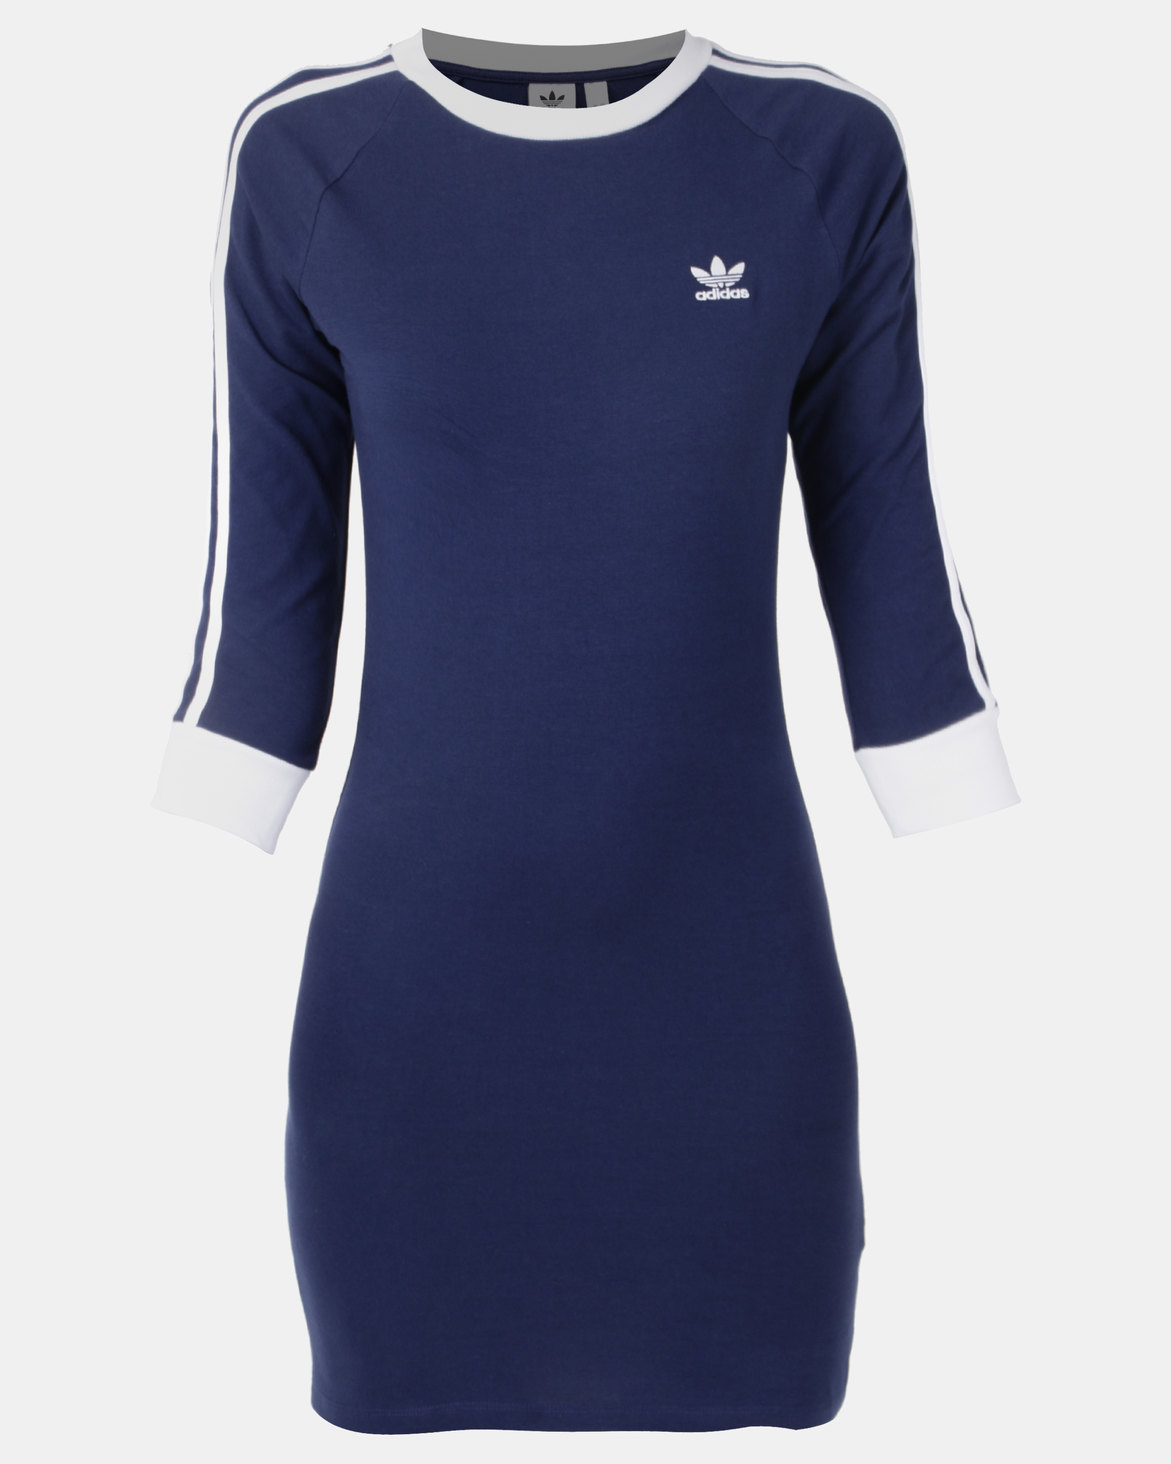 adidas Originals 3/4 Slv 3 Stripe Dress Blue | Zando